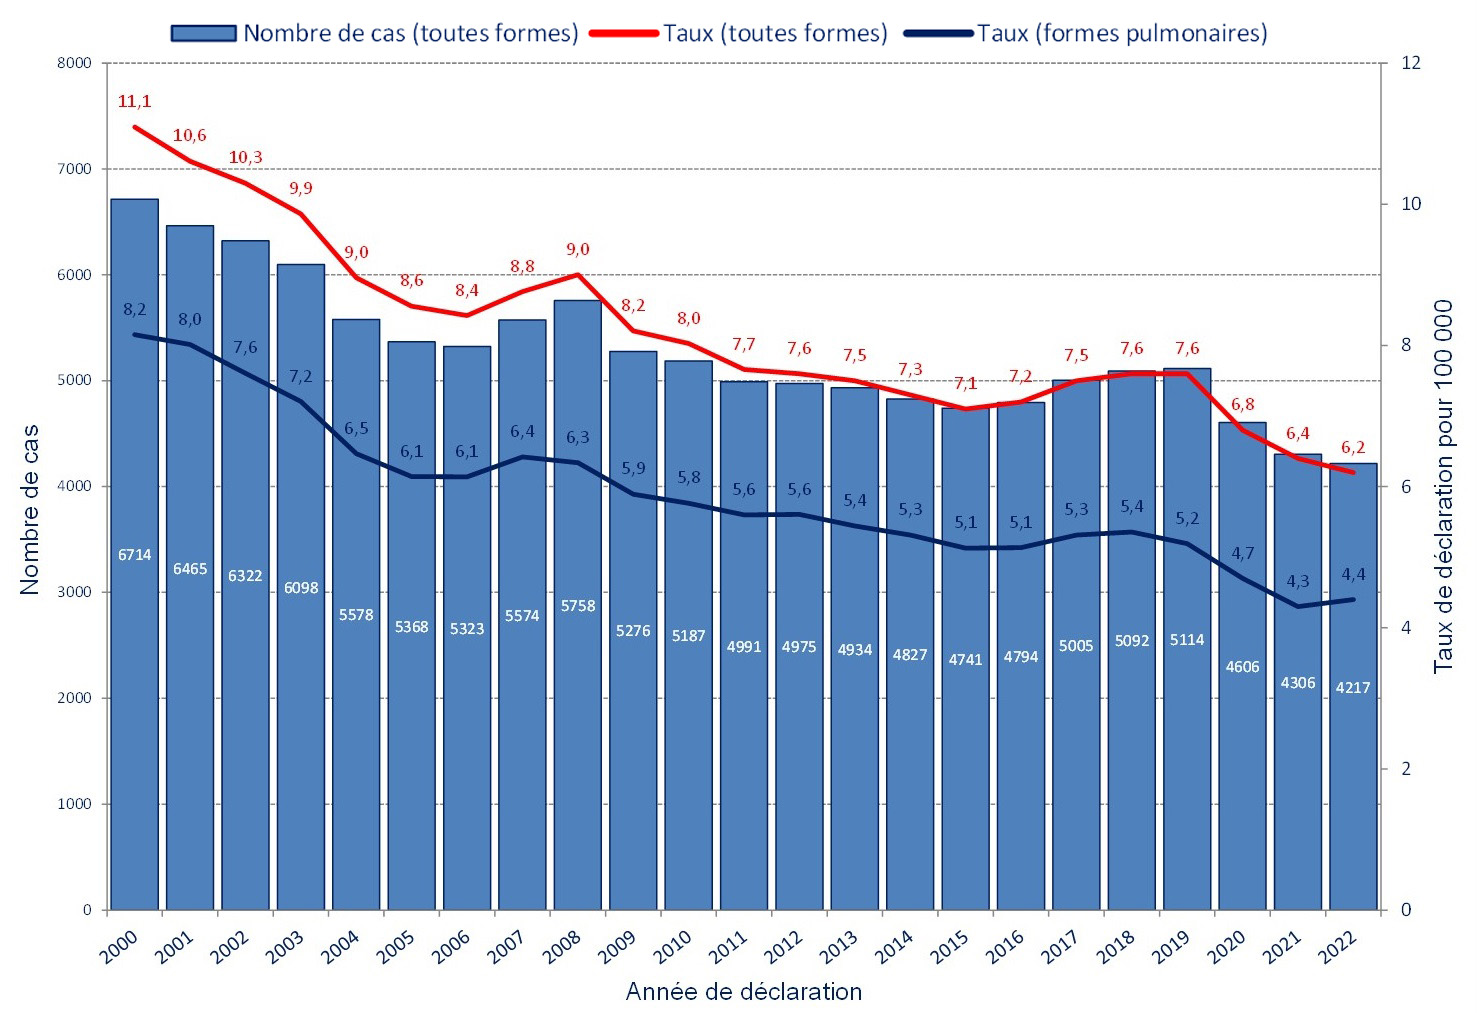 Nombre total de cas et taux de déclaration de tuberculose, France, 2000-2022